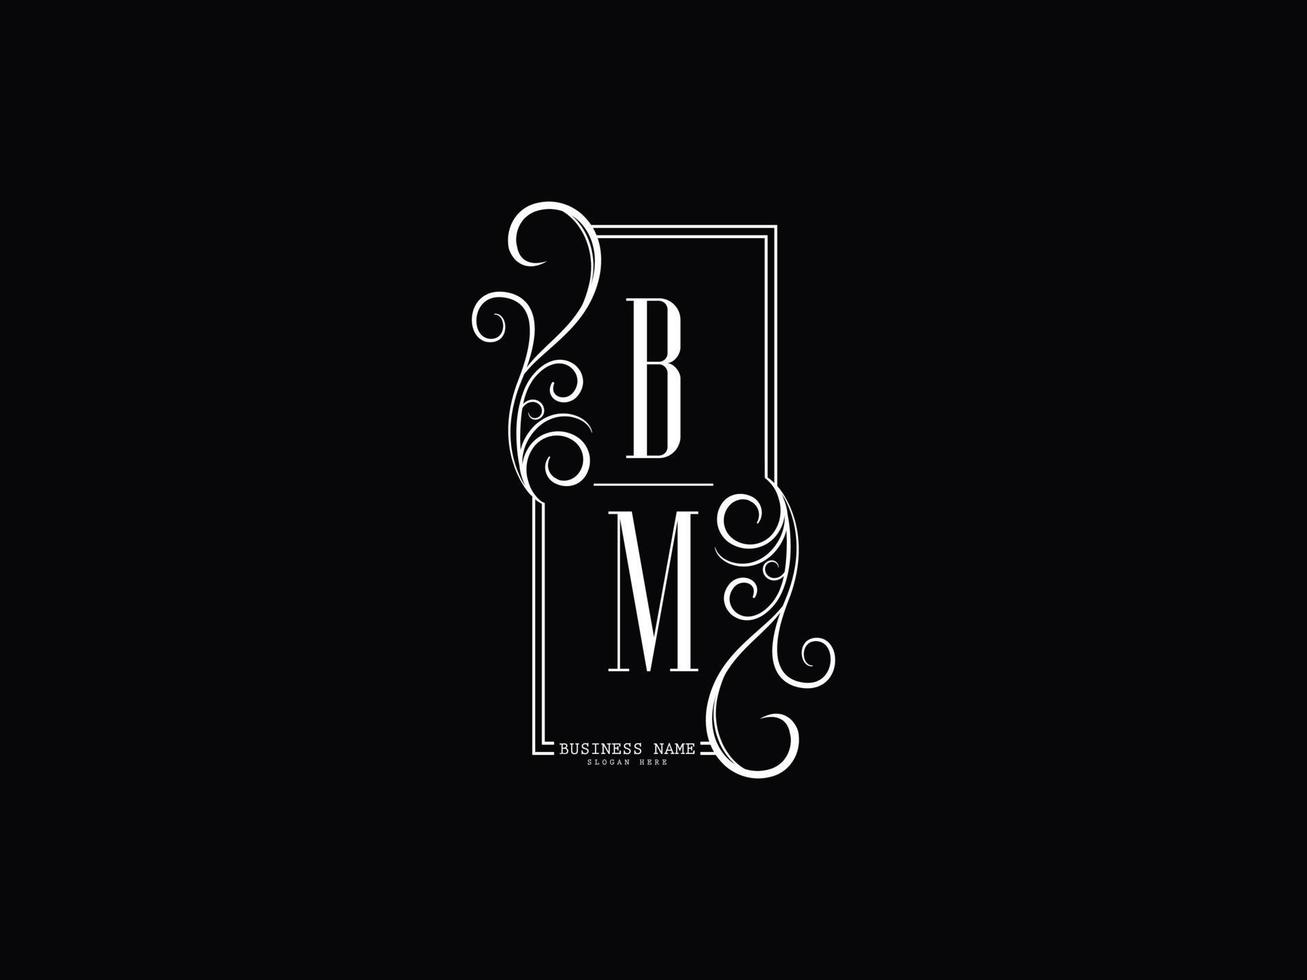 Initials BM Logo Image, Luxury Bm mb Letter Logo Design vector